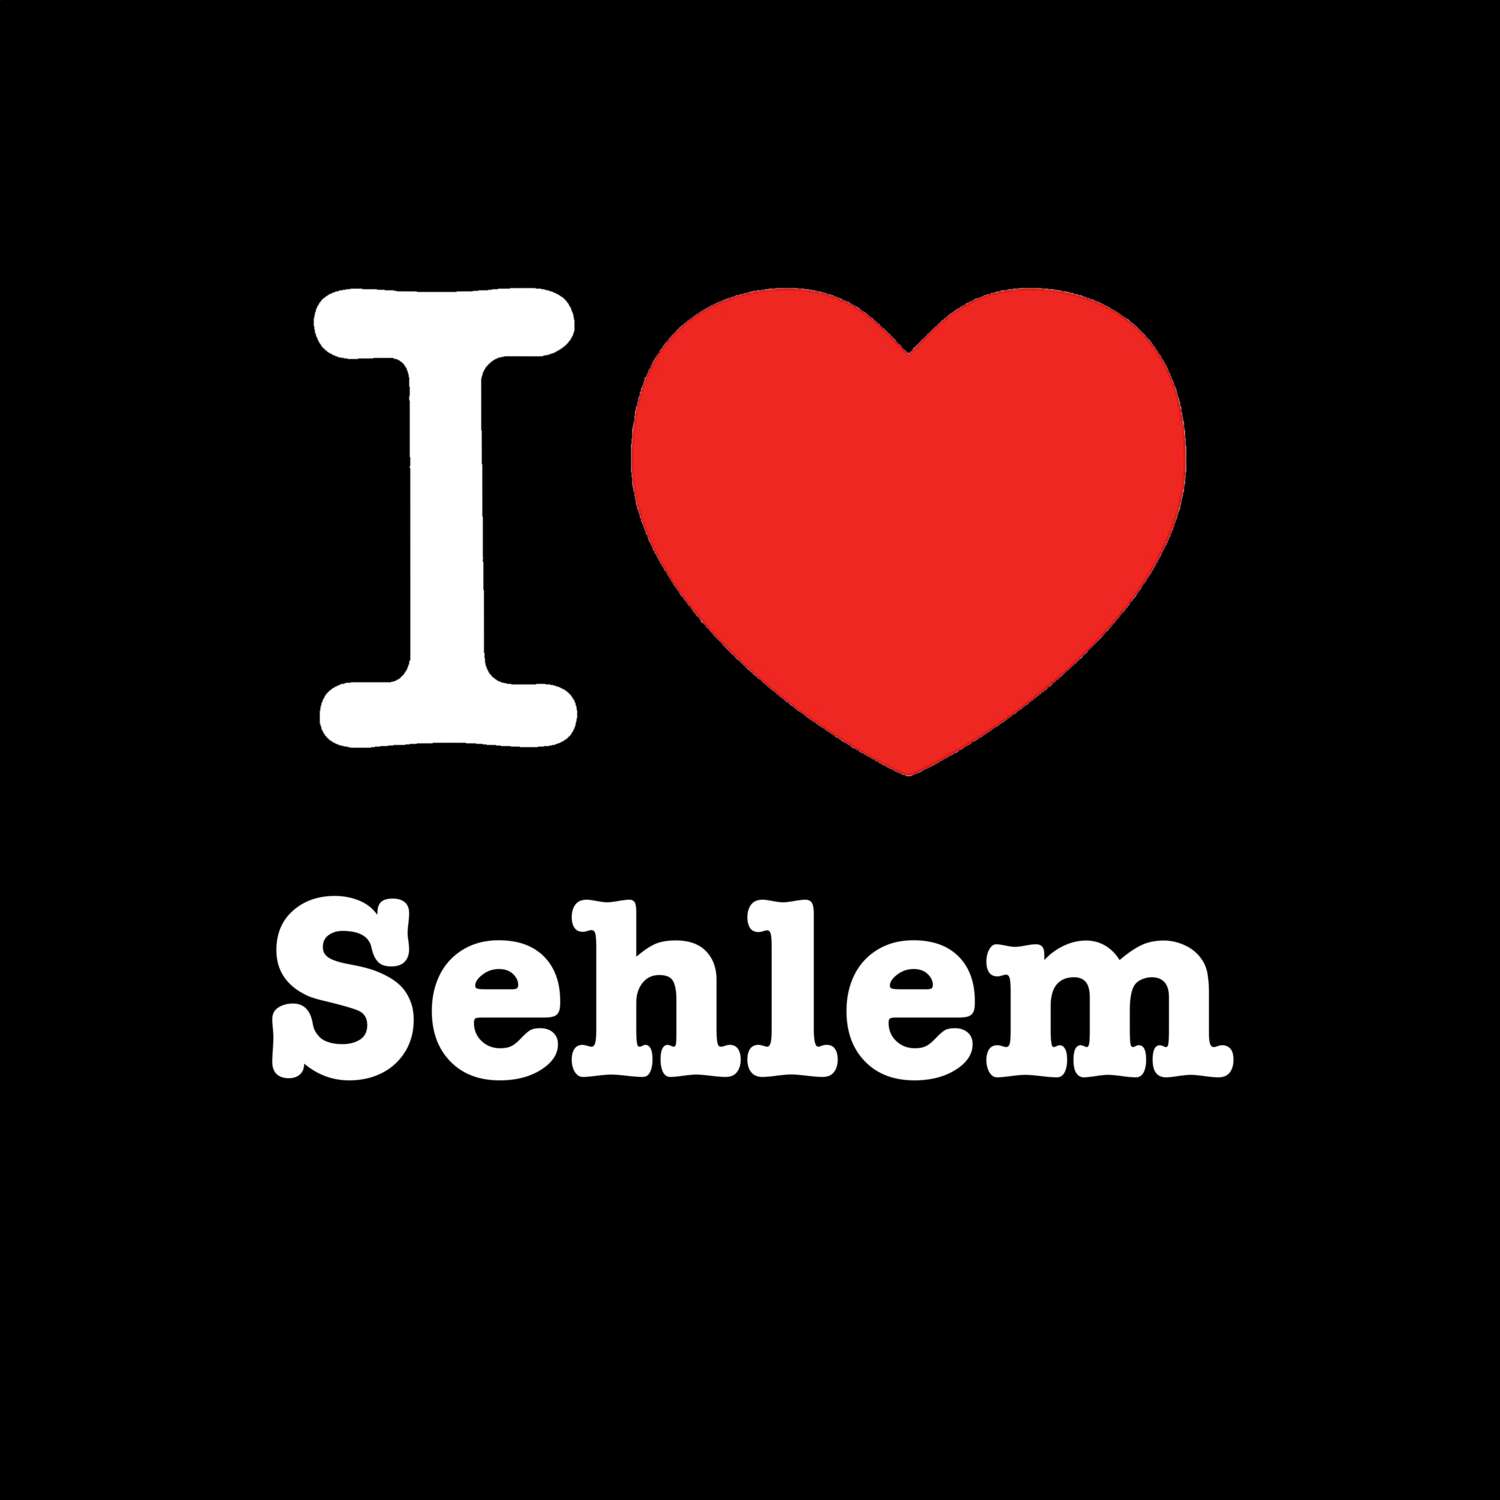 Sehlem T-Shirt »I love«